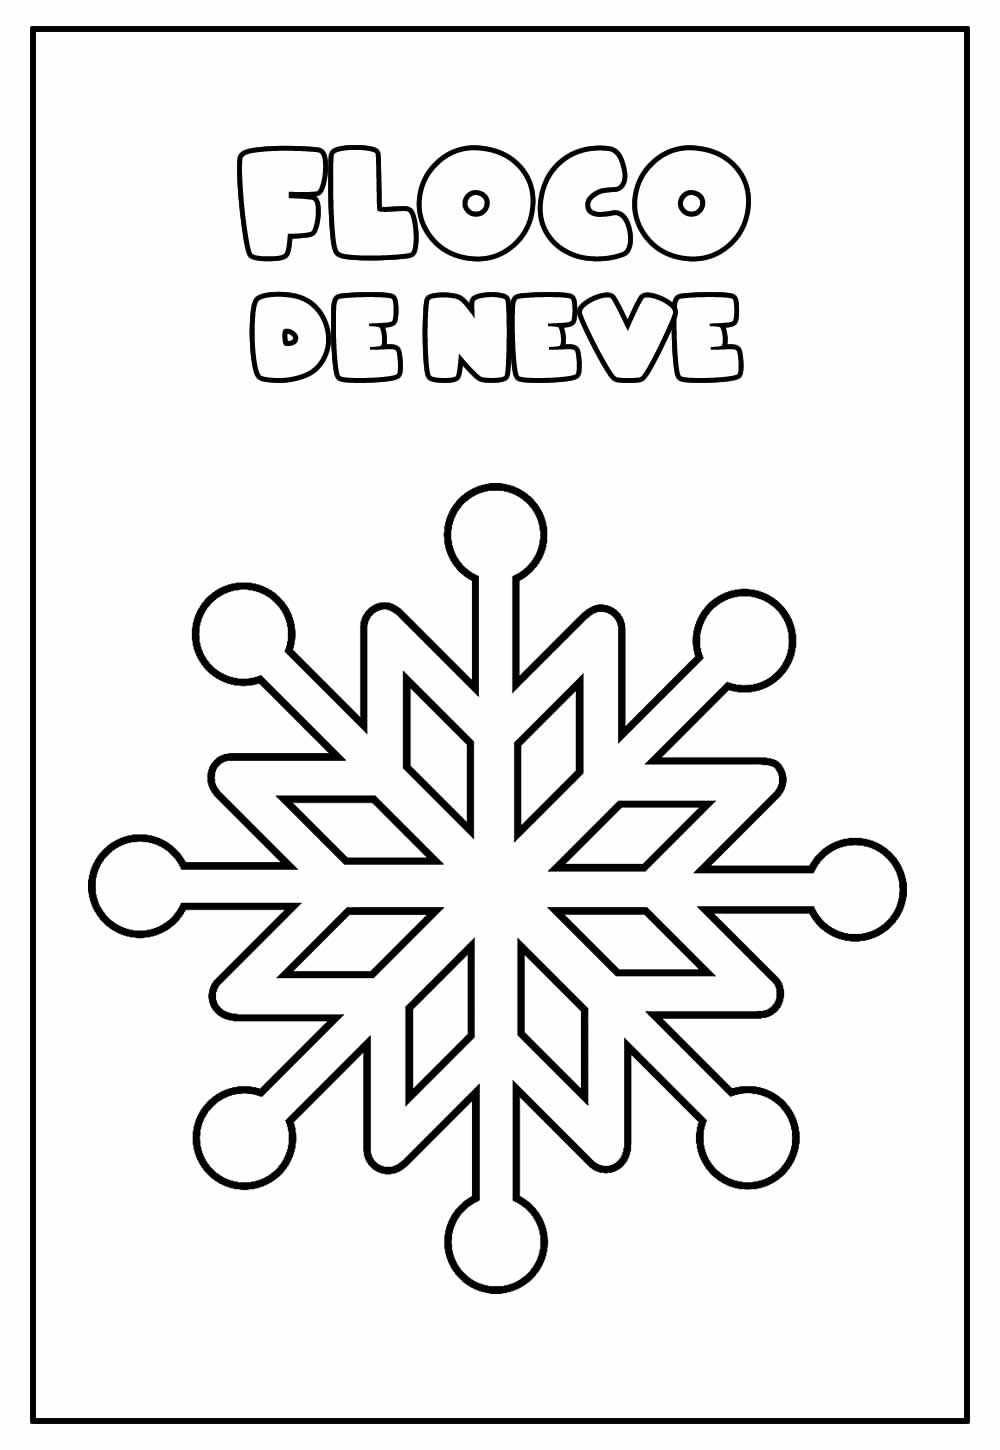 Imagem Educativa de Floco de Neve para colorir